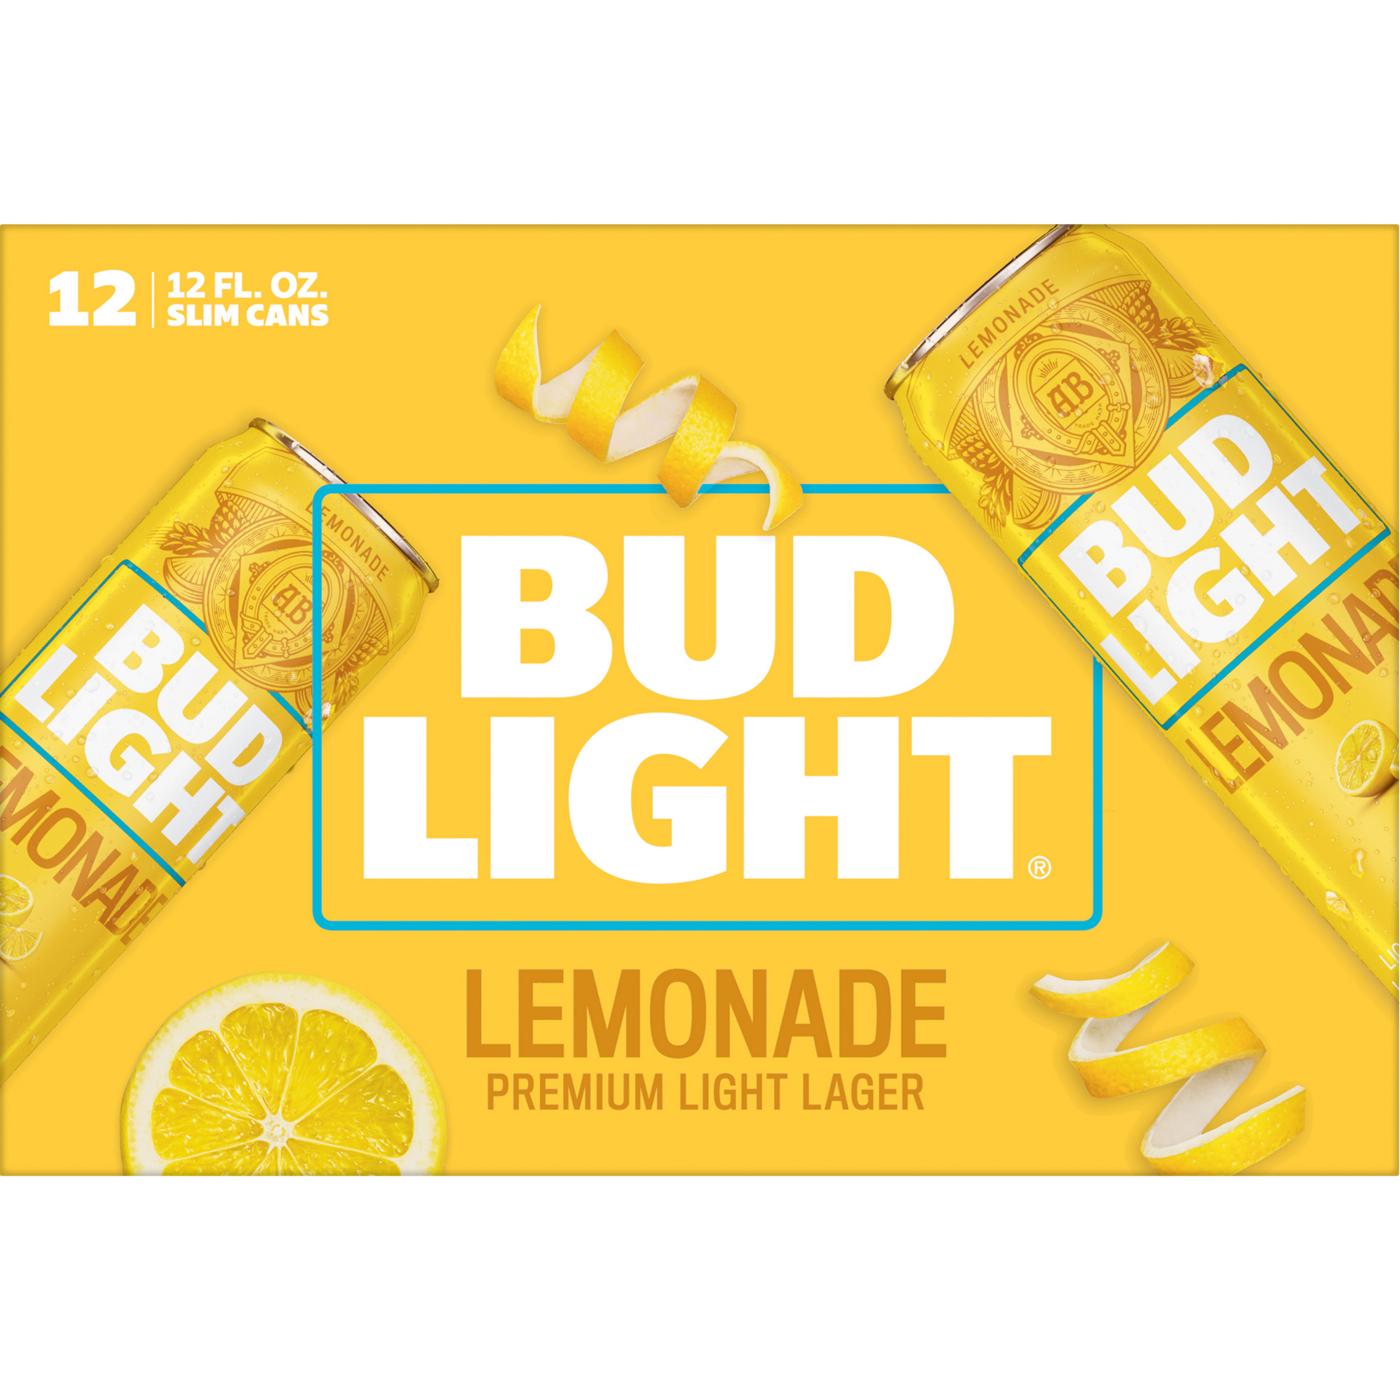 Bud Light Lemonade Beer 12 oz Cans; image 2 of 2